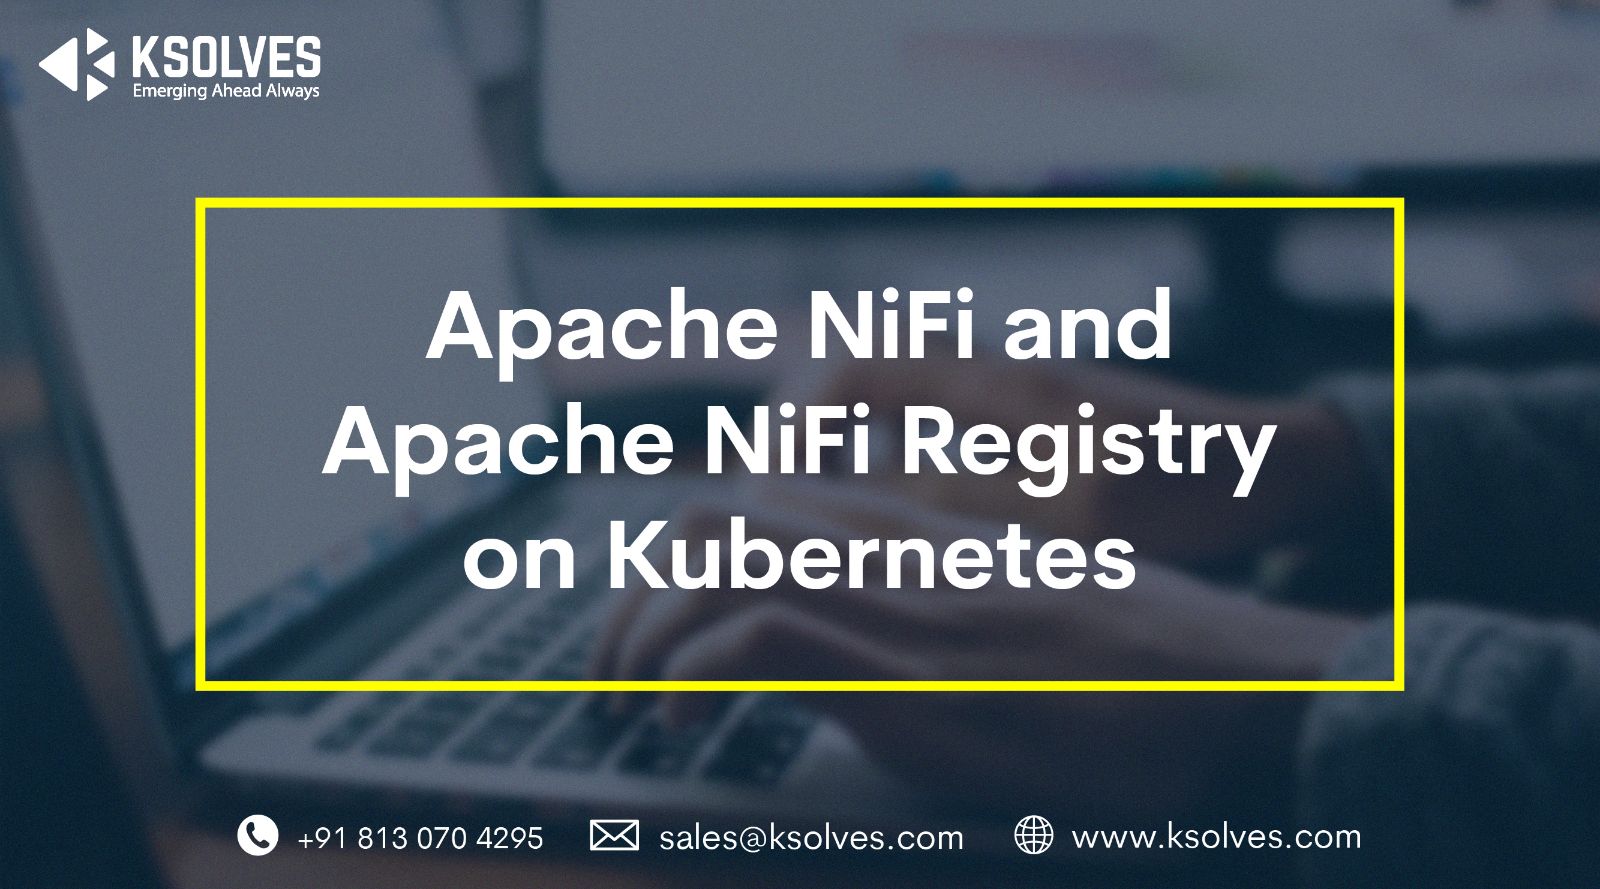 Apache NiFi and Apache NiFi Registry on Kubernetes